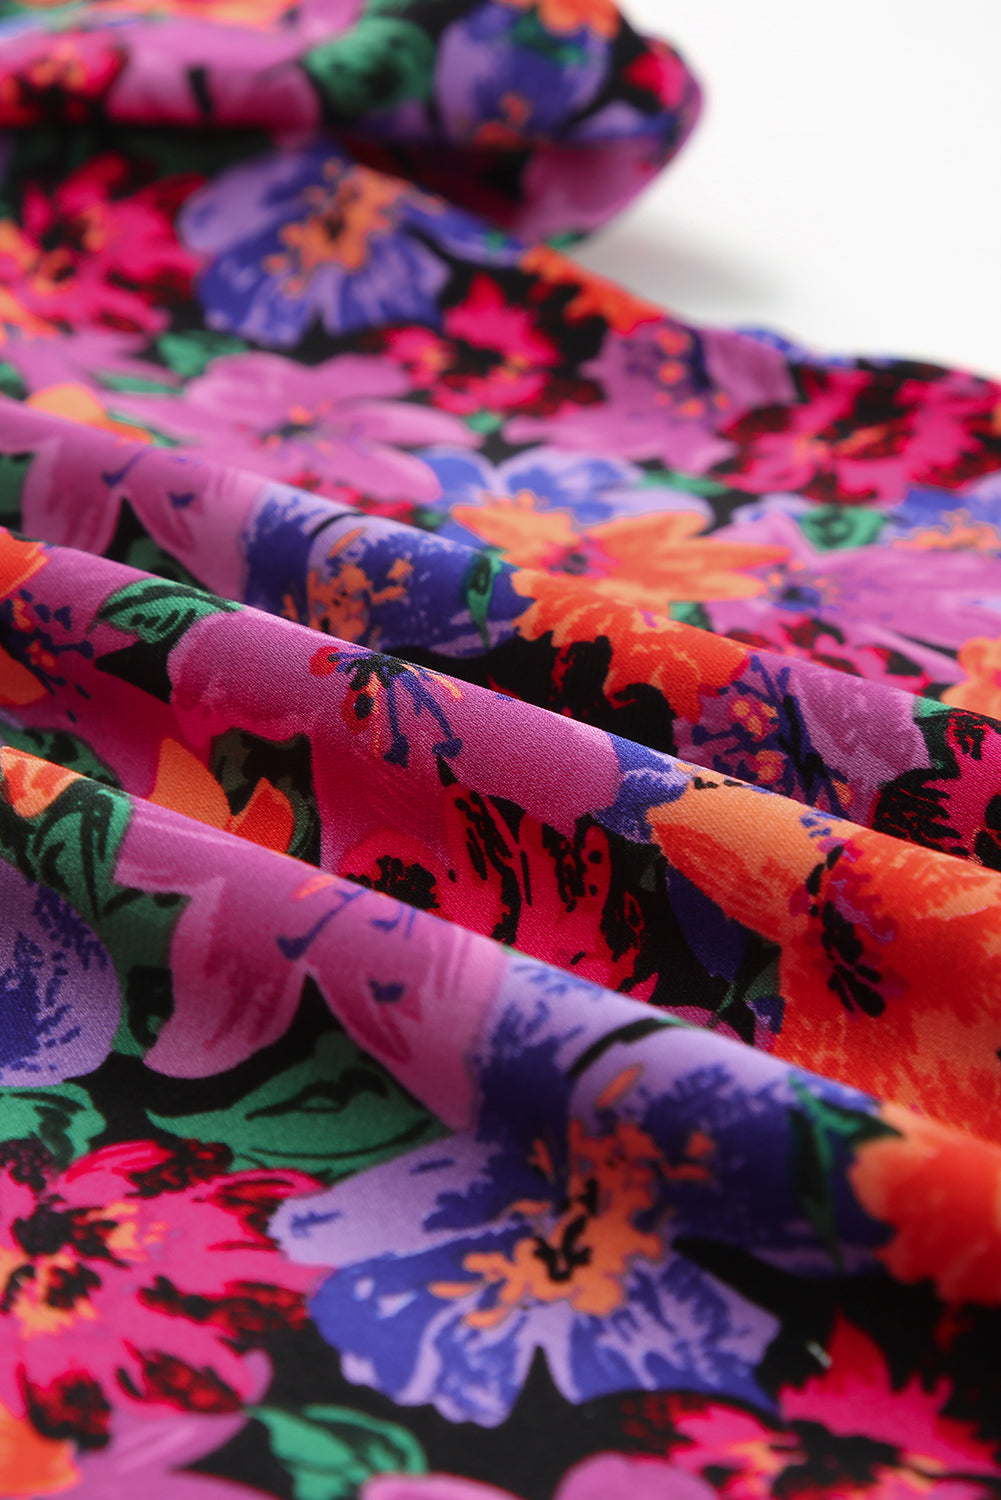 Mehrfarbige, floral bedruckte Bluse mit Rundhalsausschnitt und Puffärmeln